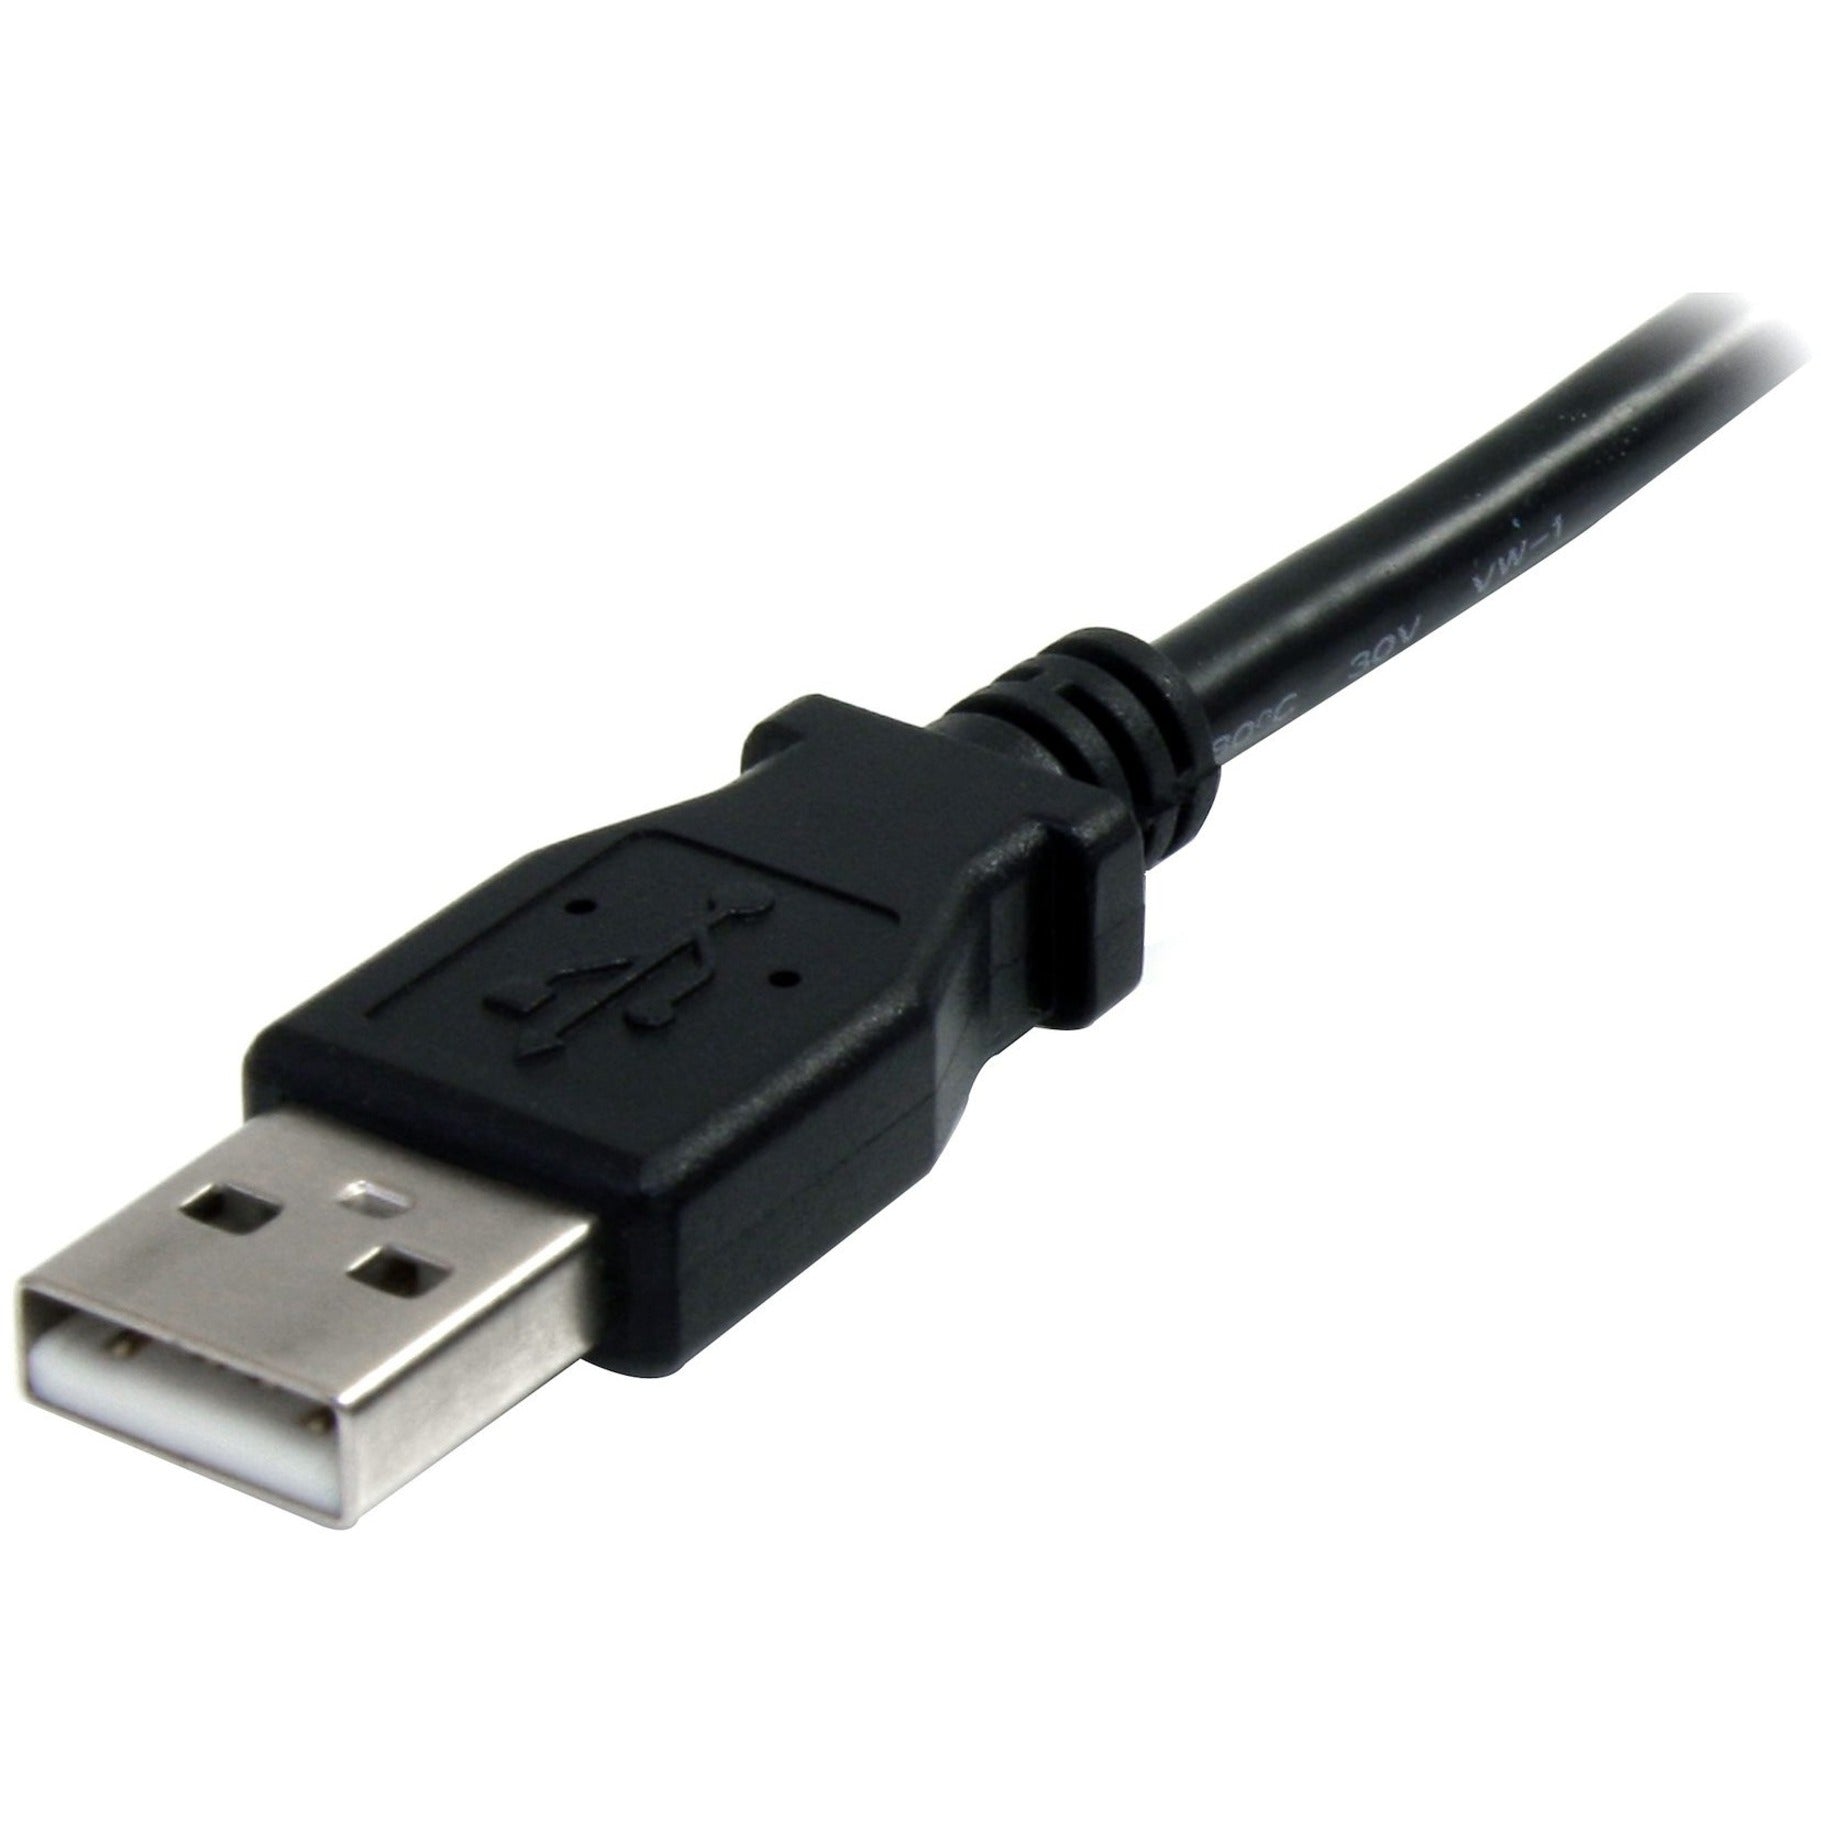 StarTech.com كابل تمديد USB 2.0 أسود بطول 3 أقدام A إلى A - ذكر/أنثى، مرن، مصبوب، إغاثة الإجهاد، سرعة نقل البيانات 480 ميغابت في الثانية